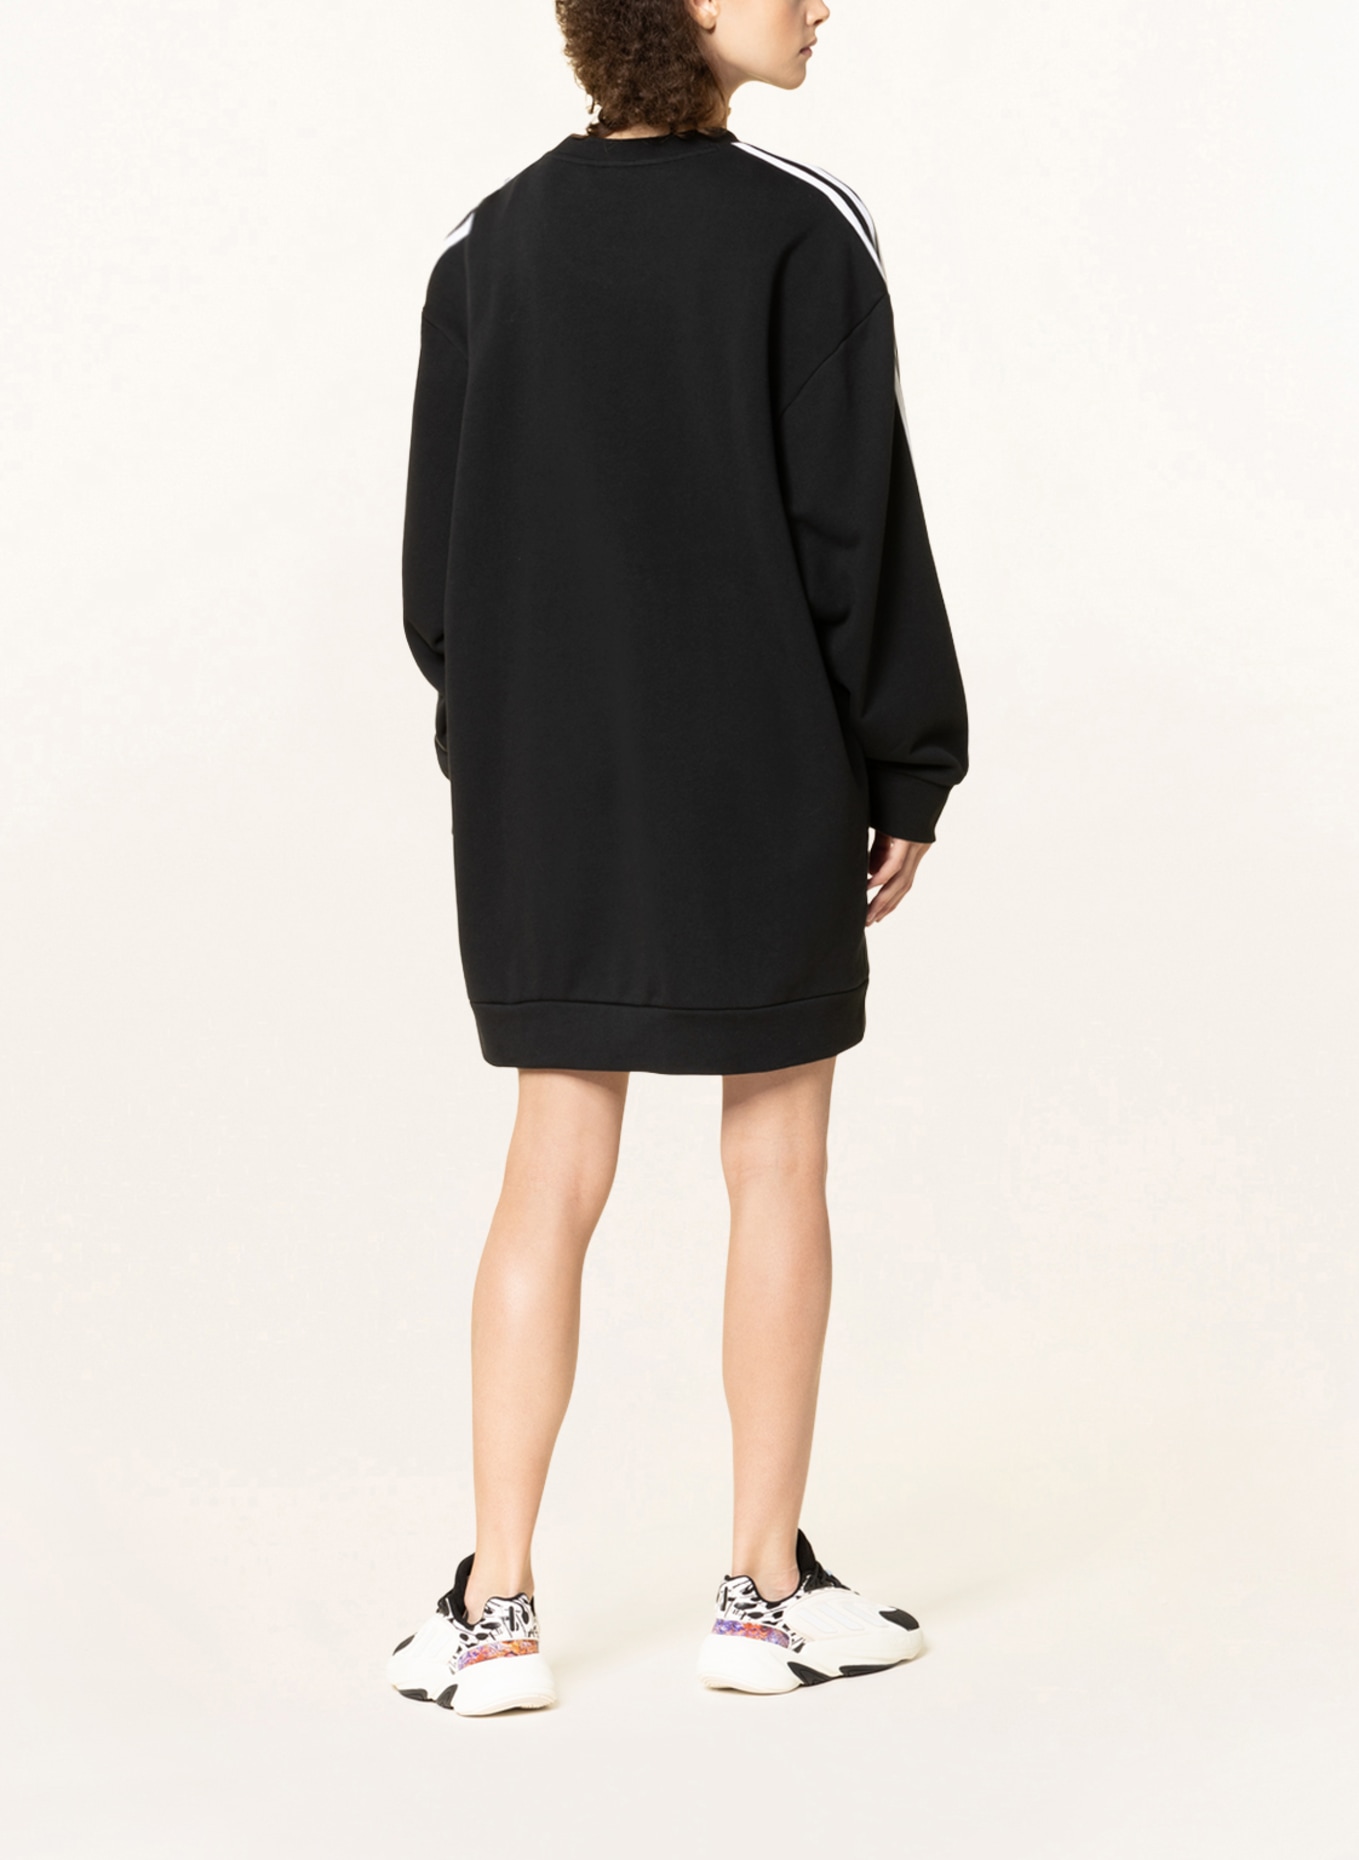 ADICOLOR Originals CLASSICS in adidas black dress Sweater